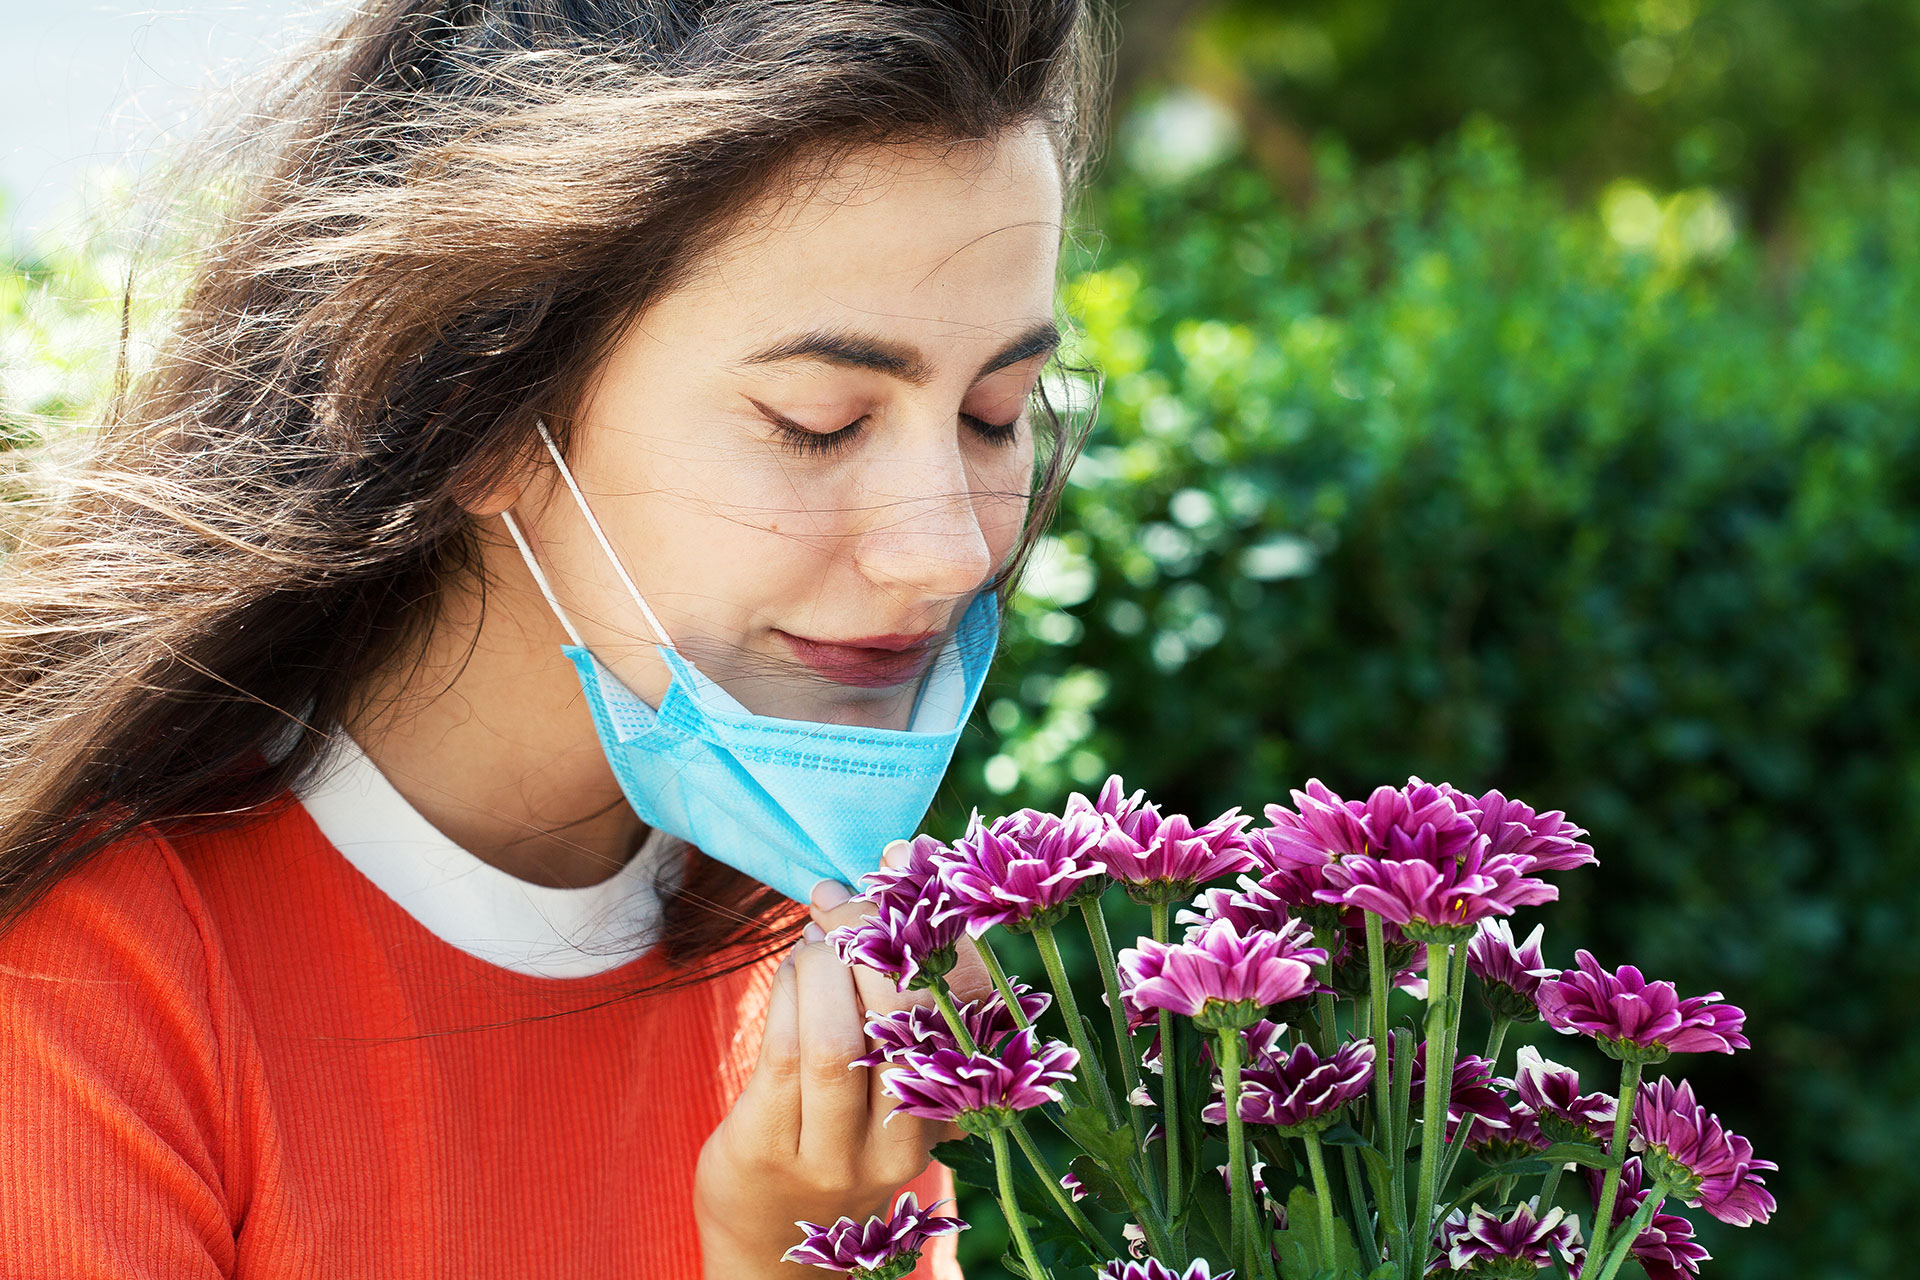 Un solo estímulo olfatorio puede traer a la memoria aquello que creíamos olvidado
(Getty Images)